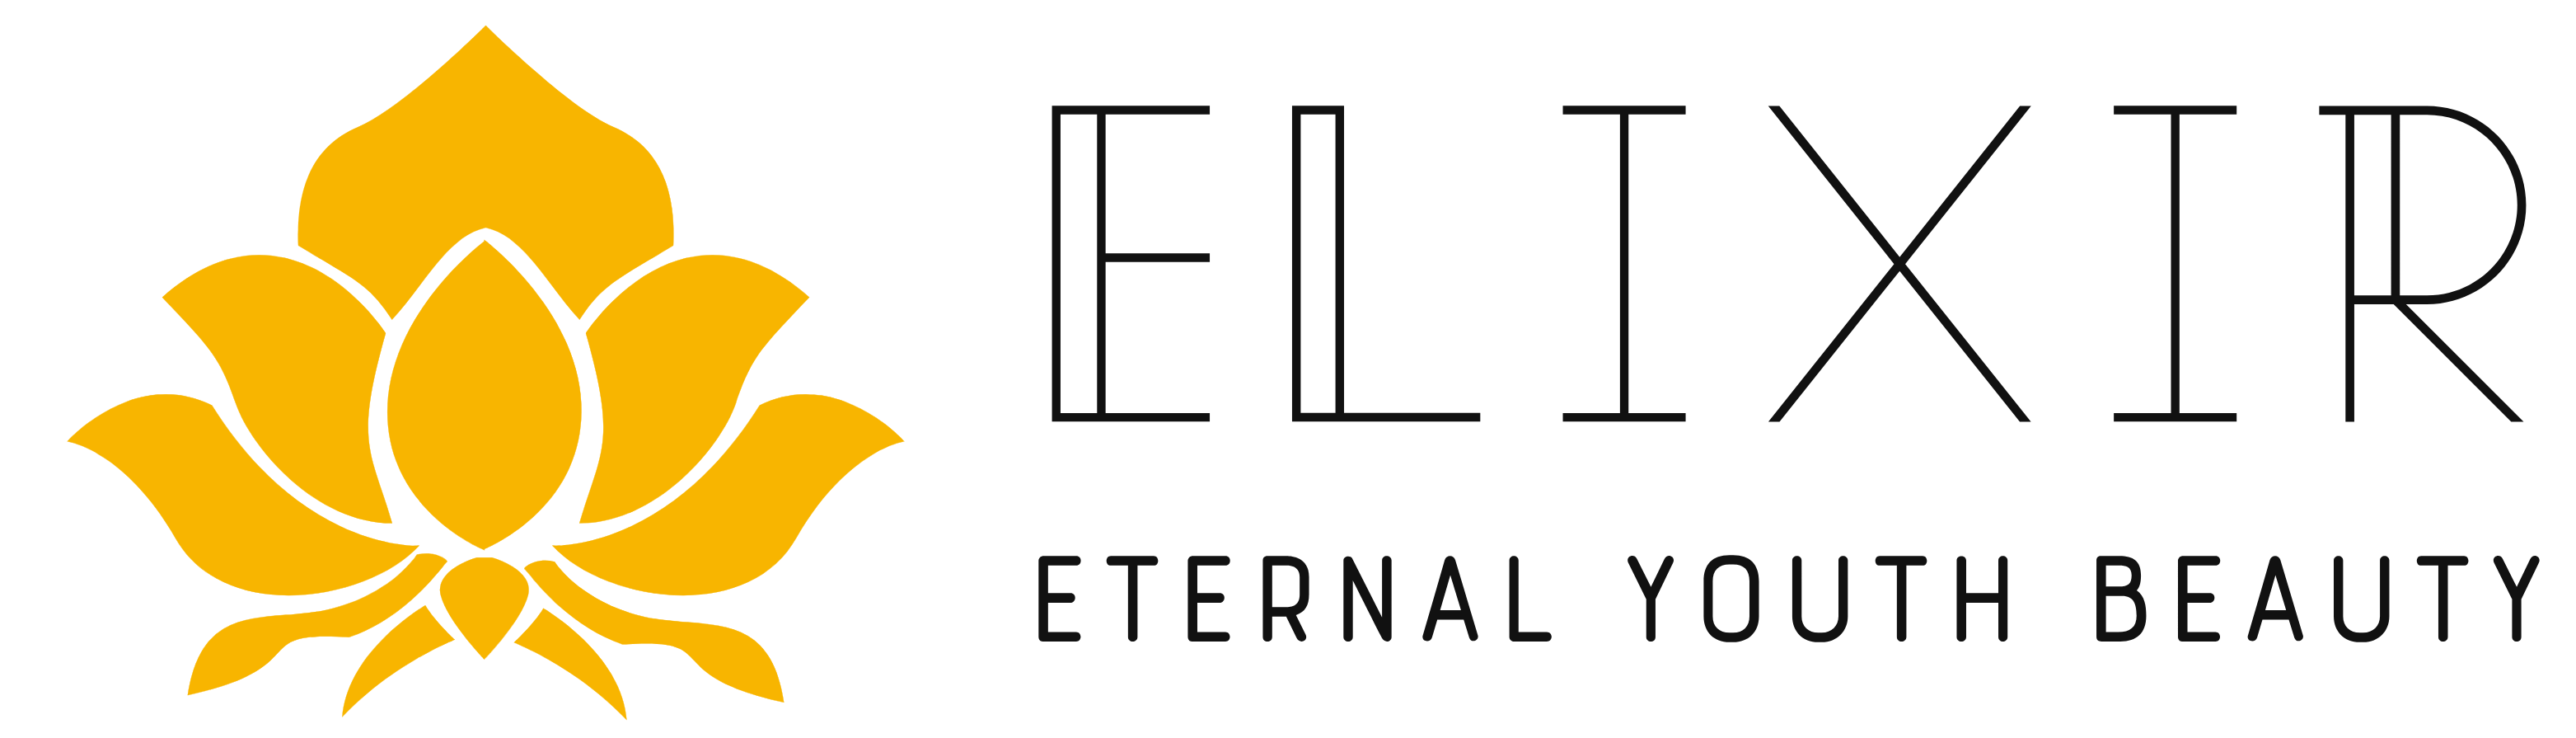 eternal youth beauty logo